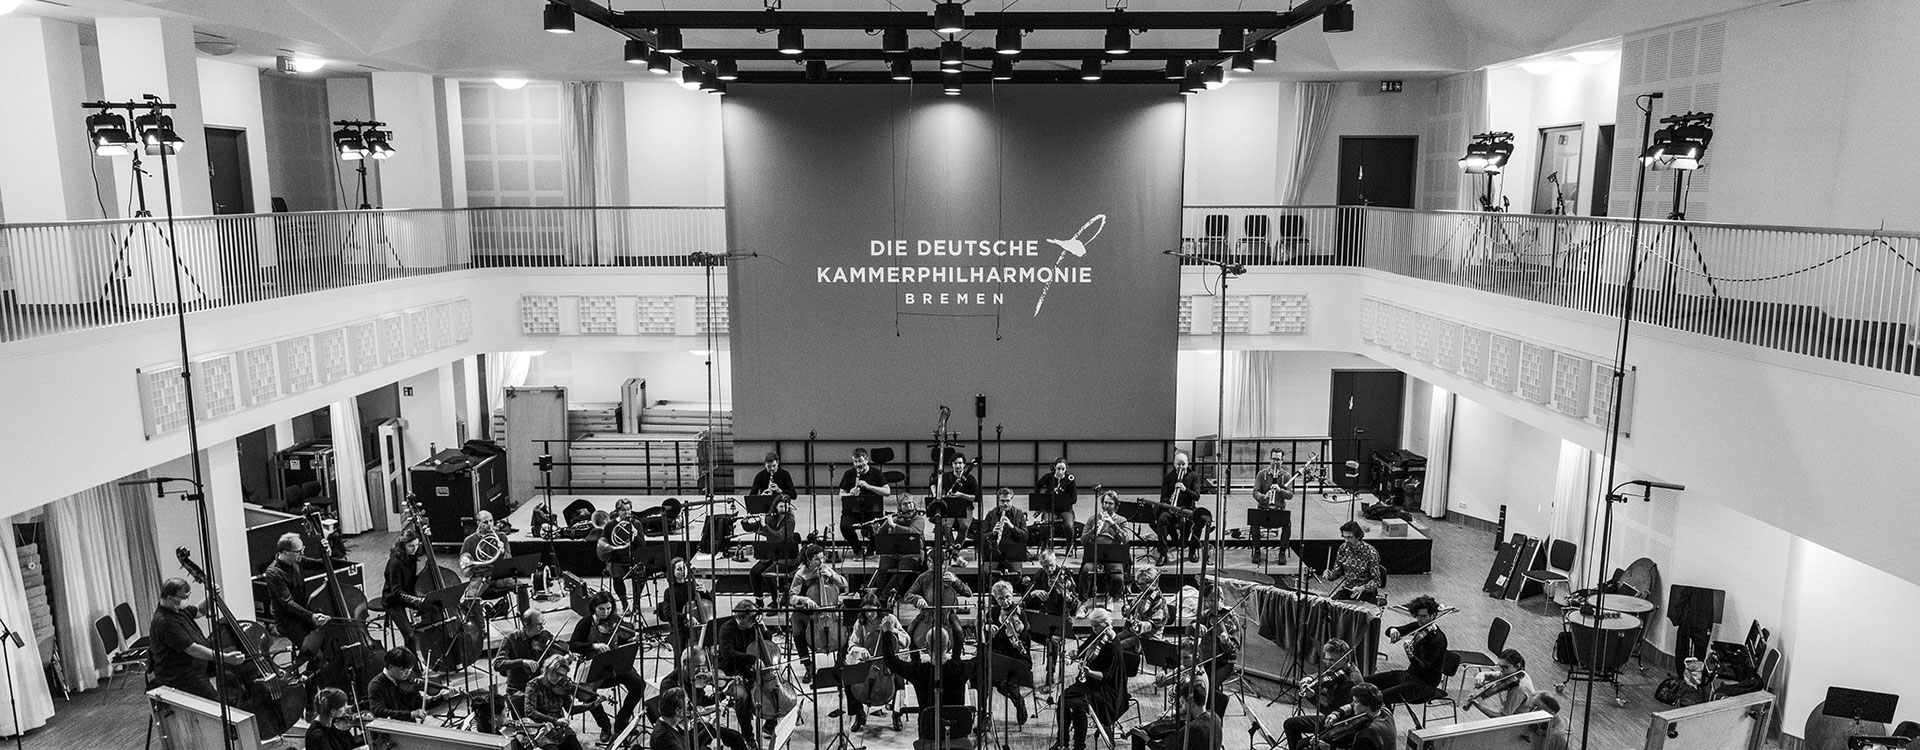 Klassik Cloud - The Deutsche Kammerphilharmonie Bremen